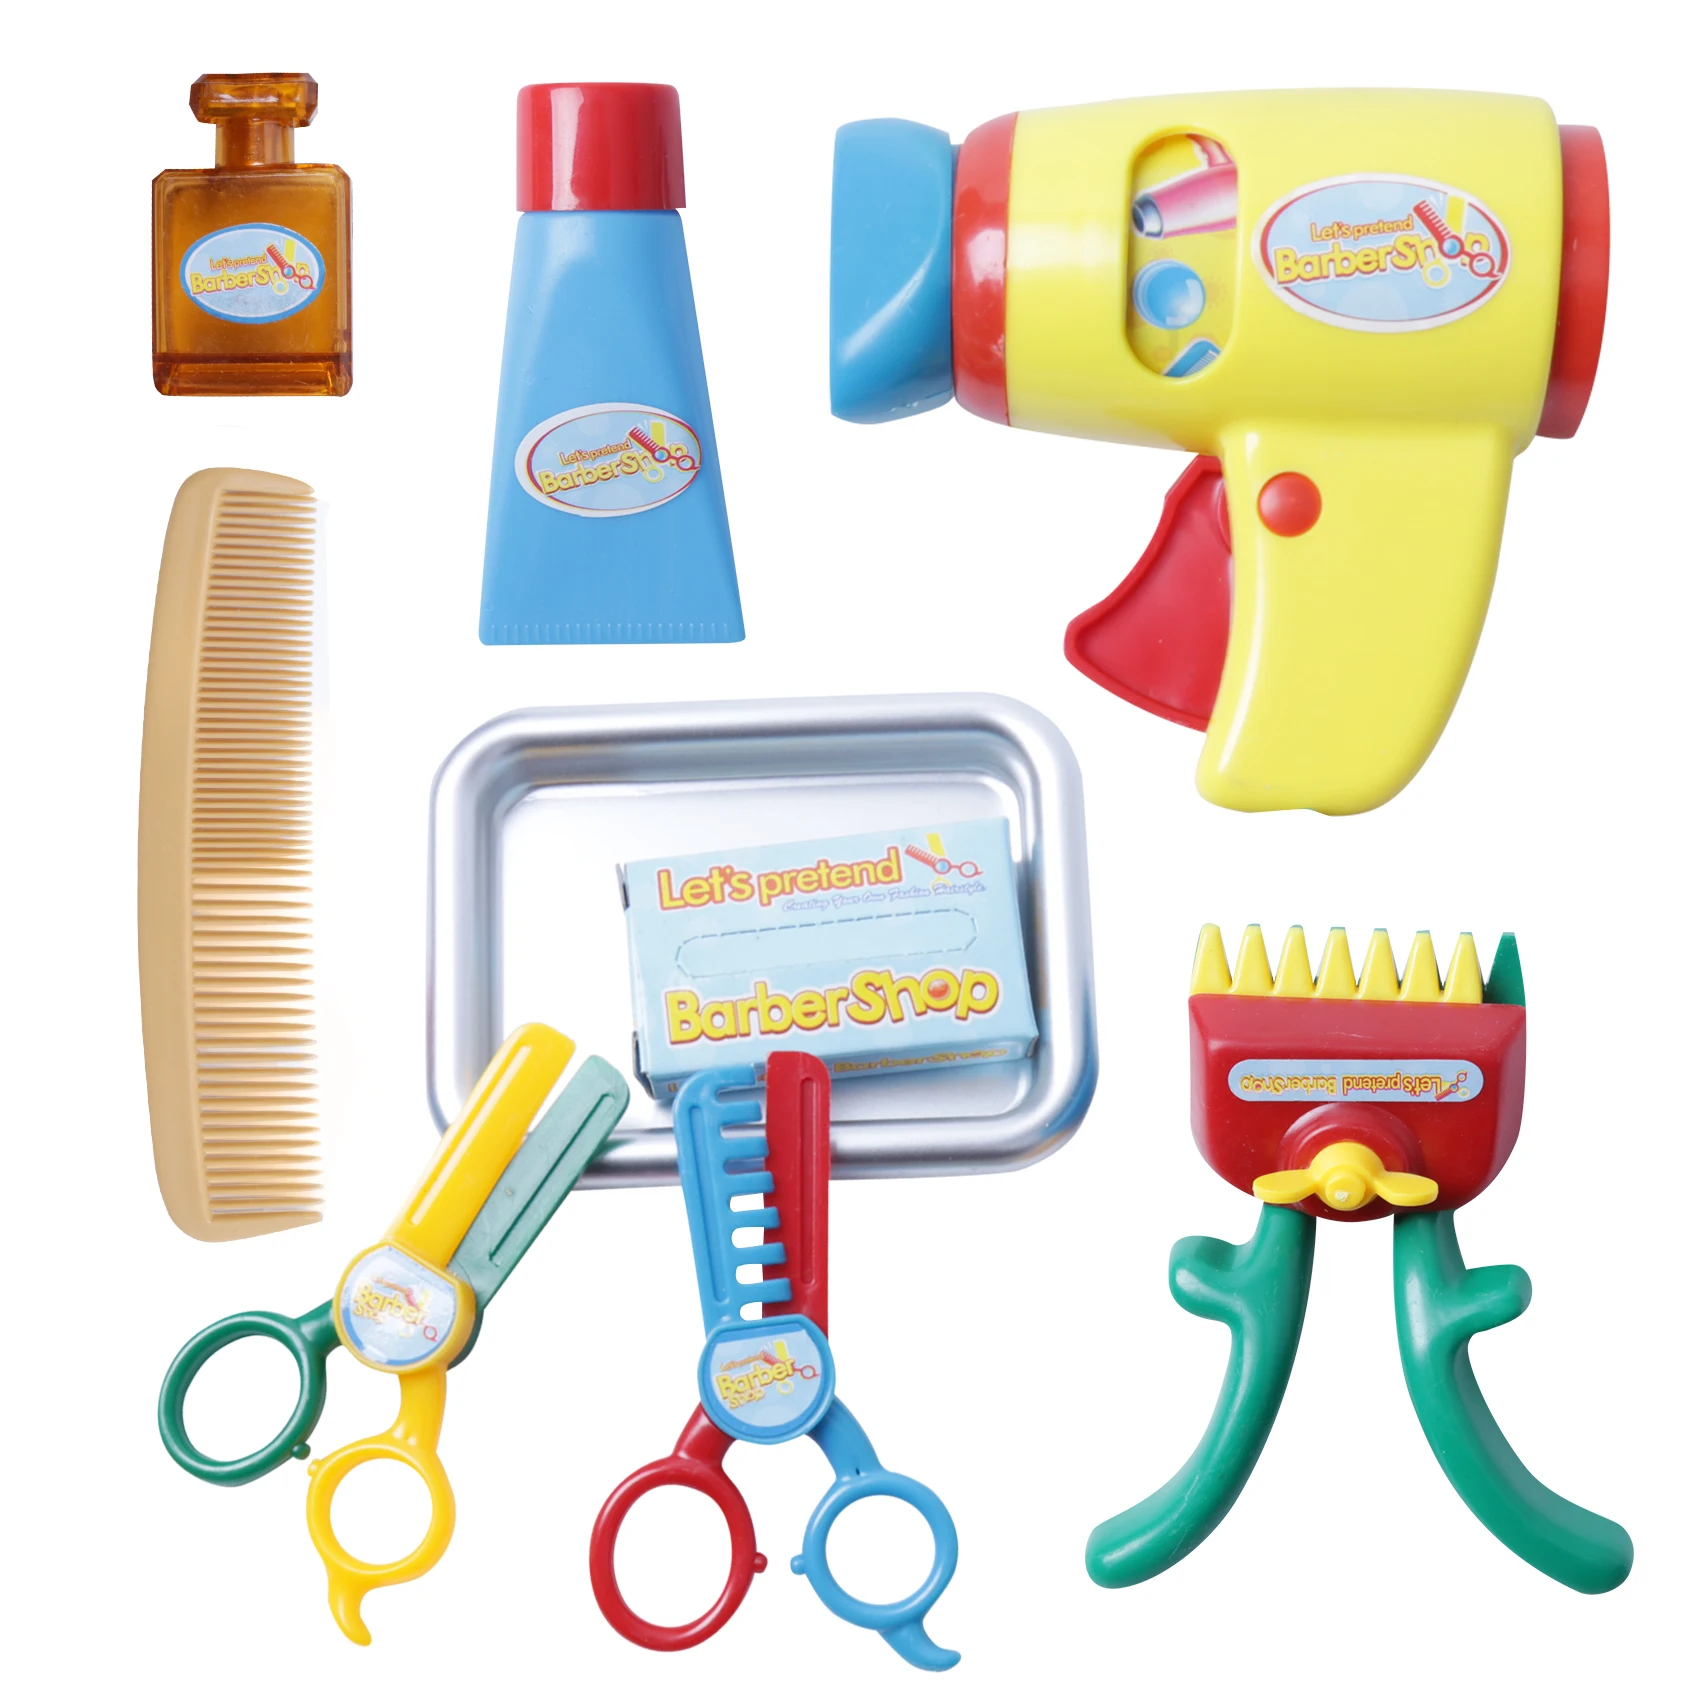 Претендует игрушка Косметика моделирование парикмахерские инструменты с фен, расческа ножницы для Для детей девочек